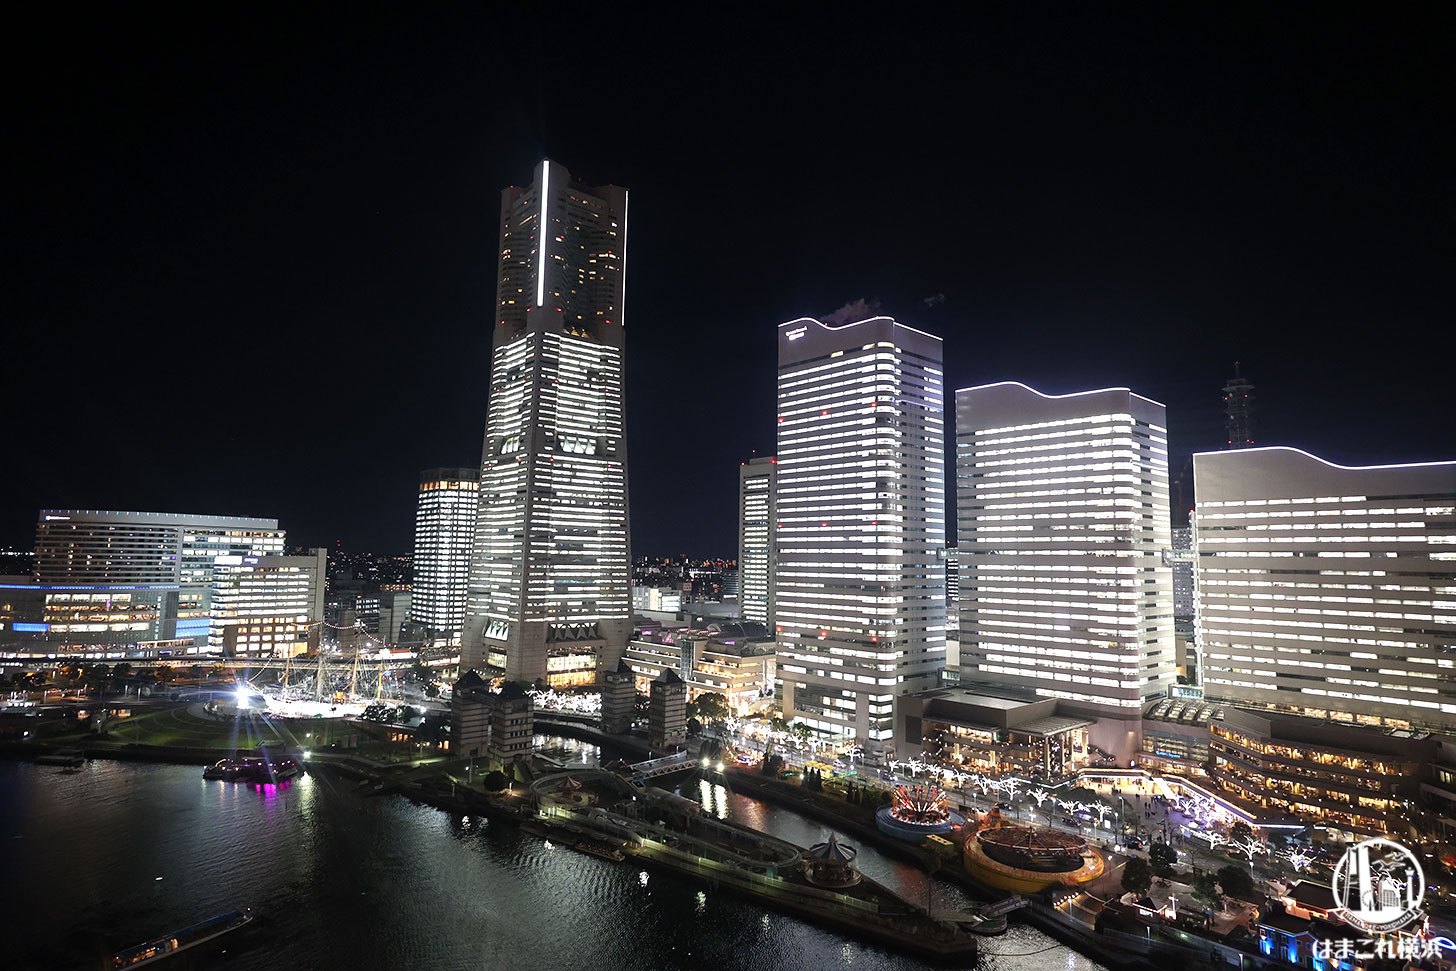 大観覧車・コスモクロック21から横浜の1年で最も美しい夜景を360度観覧してきた！